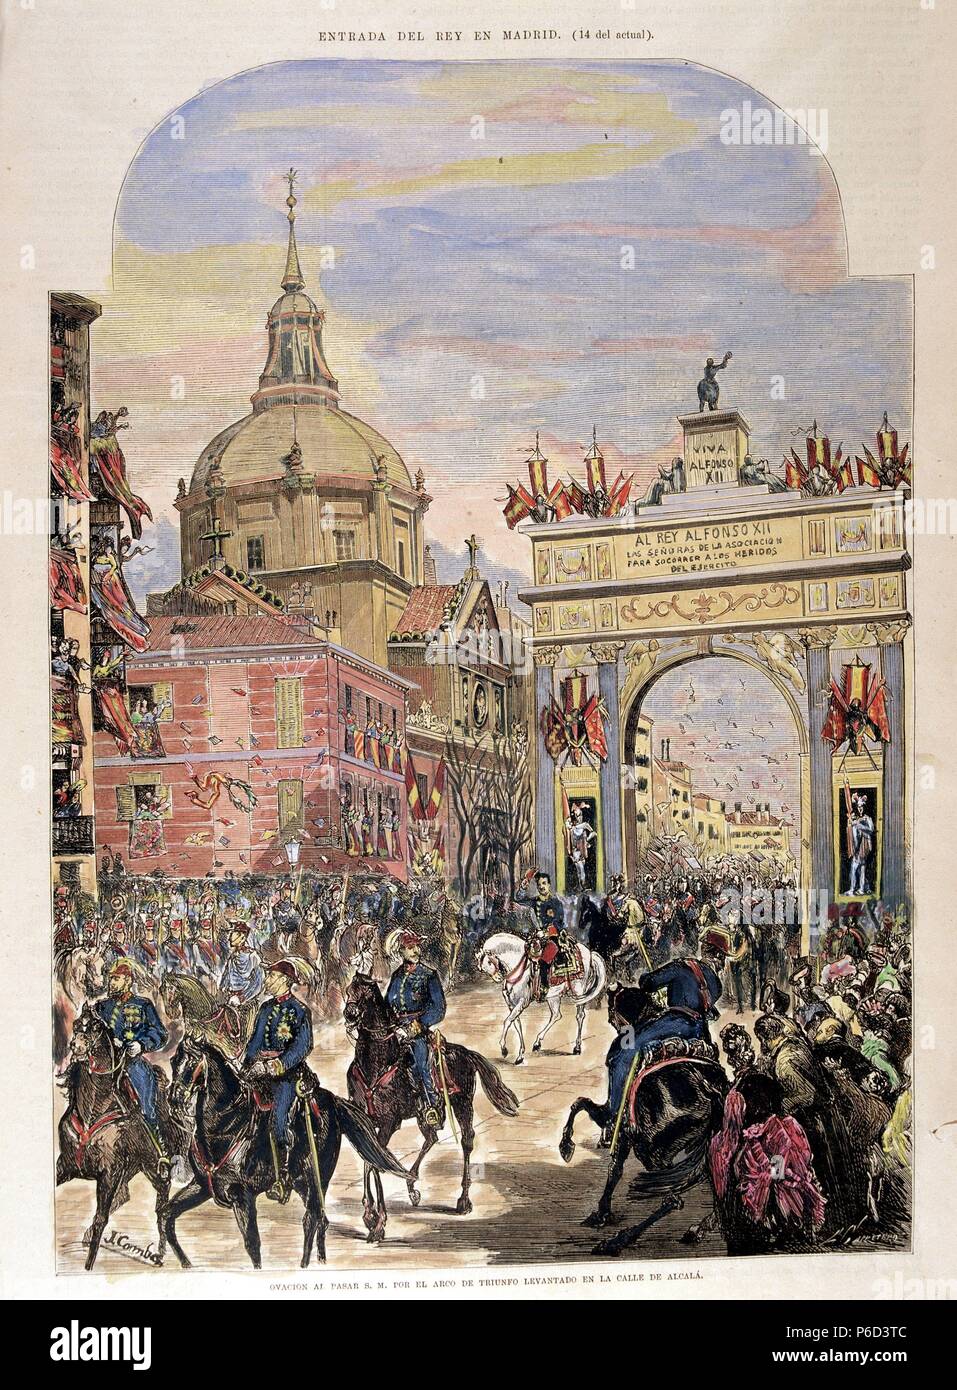 ALFONSO XII. REY DE ESPAÑA. MADRID 1857 - 1885. ENTRADA EN MADRID. GRABADO. ILUSTRACION ESPAÑOLA Y AMERICANA. Stock Photo